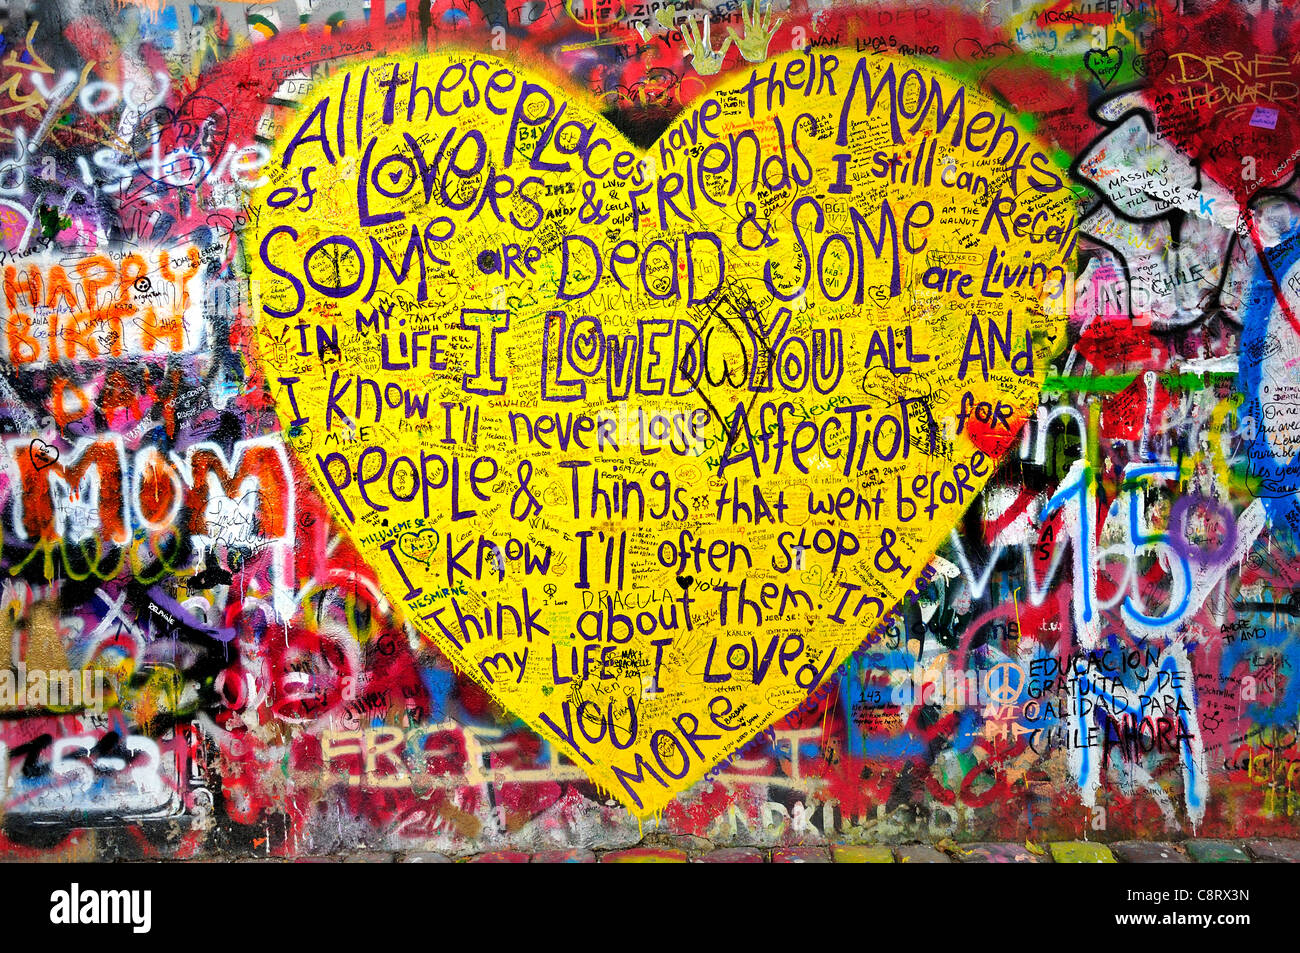 Praga, Repubblica Ceca. Mala Strana. Muro di John Lennon in Velkoprevorske namesti (Piazza) testi di una canzone dei Beatles "nella mia vita" Foto Stock